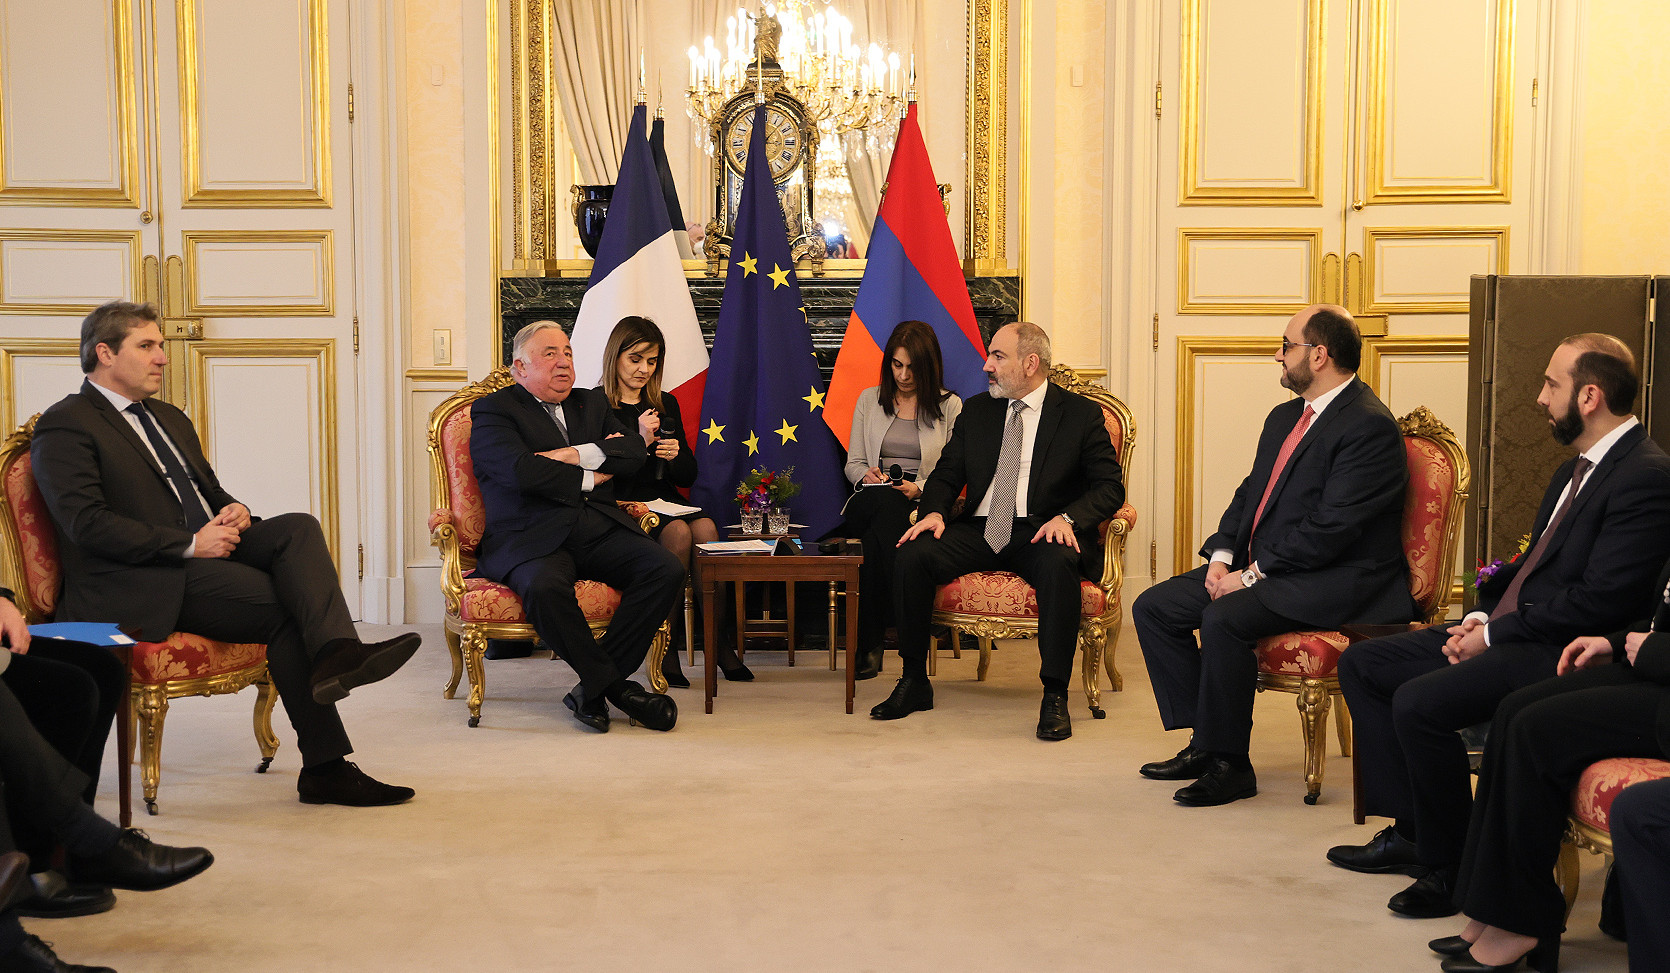 ՀՀ վարչապետը Ֆրանսիայի Սենատի նախագահի հետ քննարկել է Հարավային Կովկասում տեղի ունեցող գործընթացներին առնչվող հարցեր